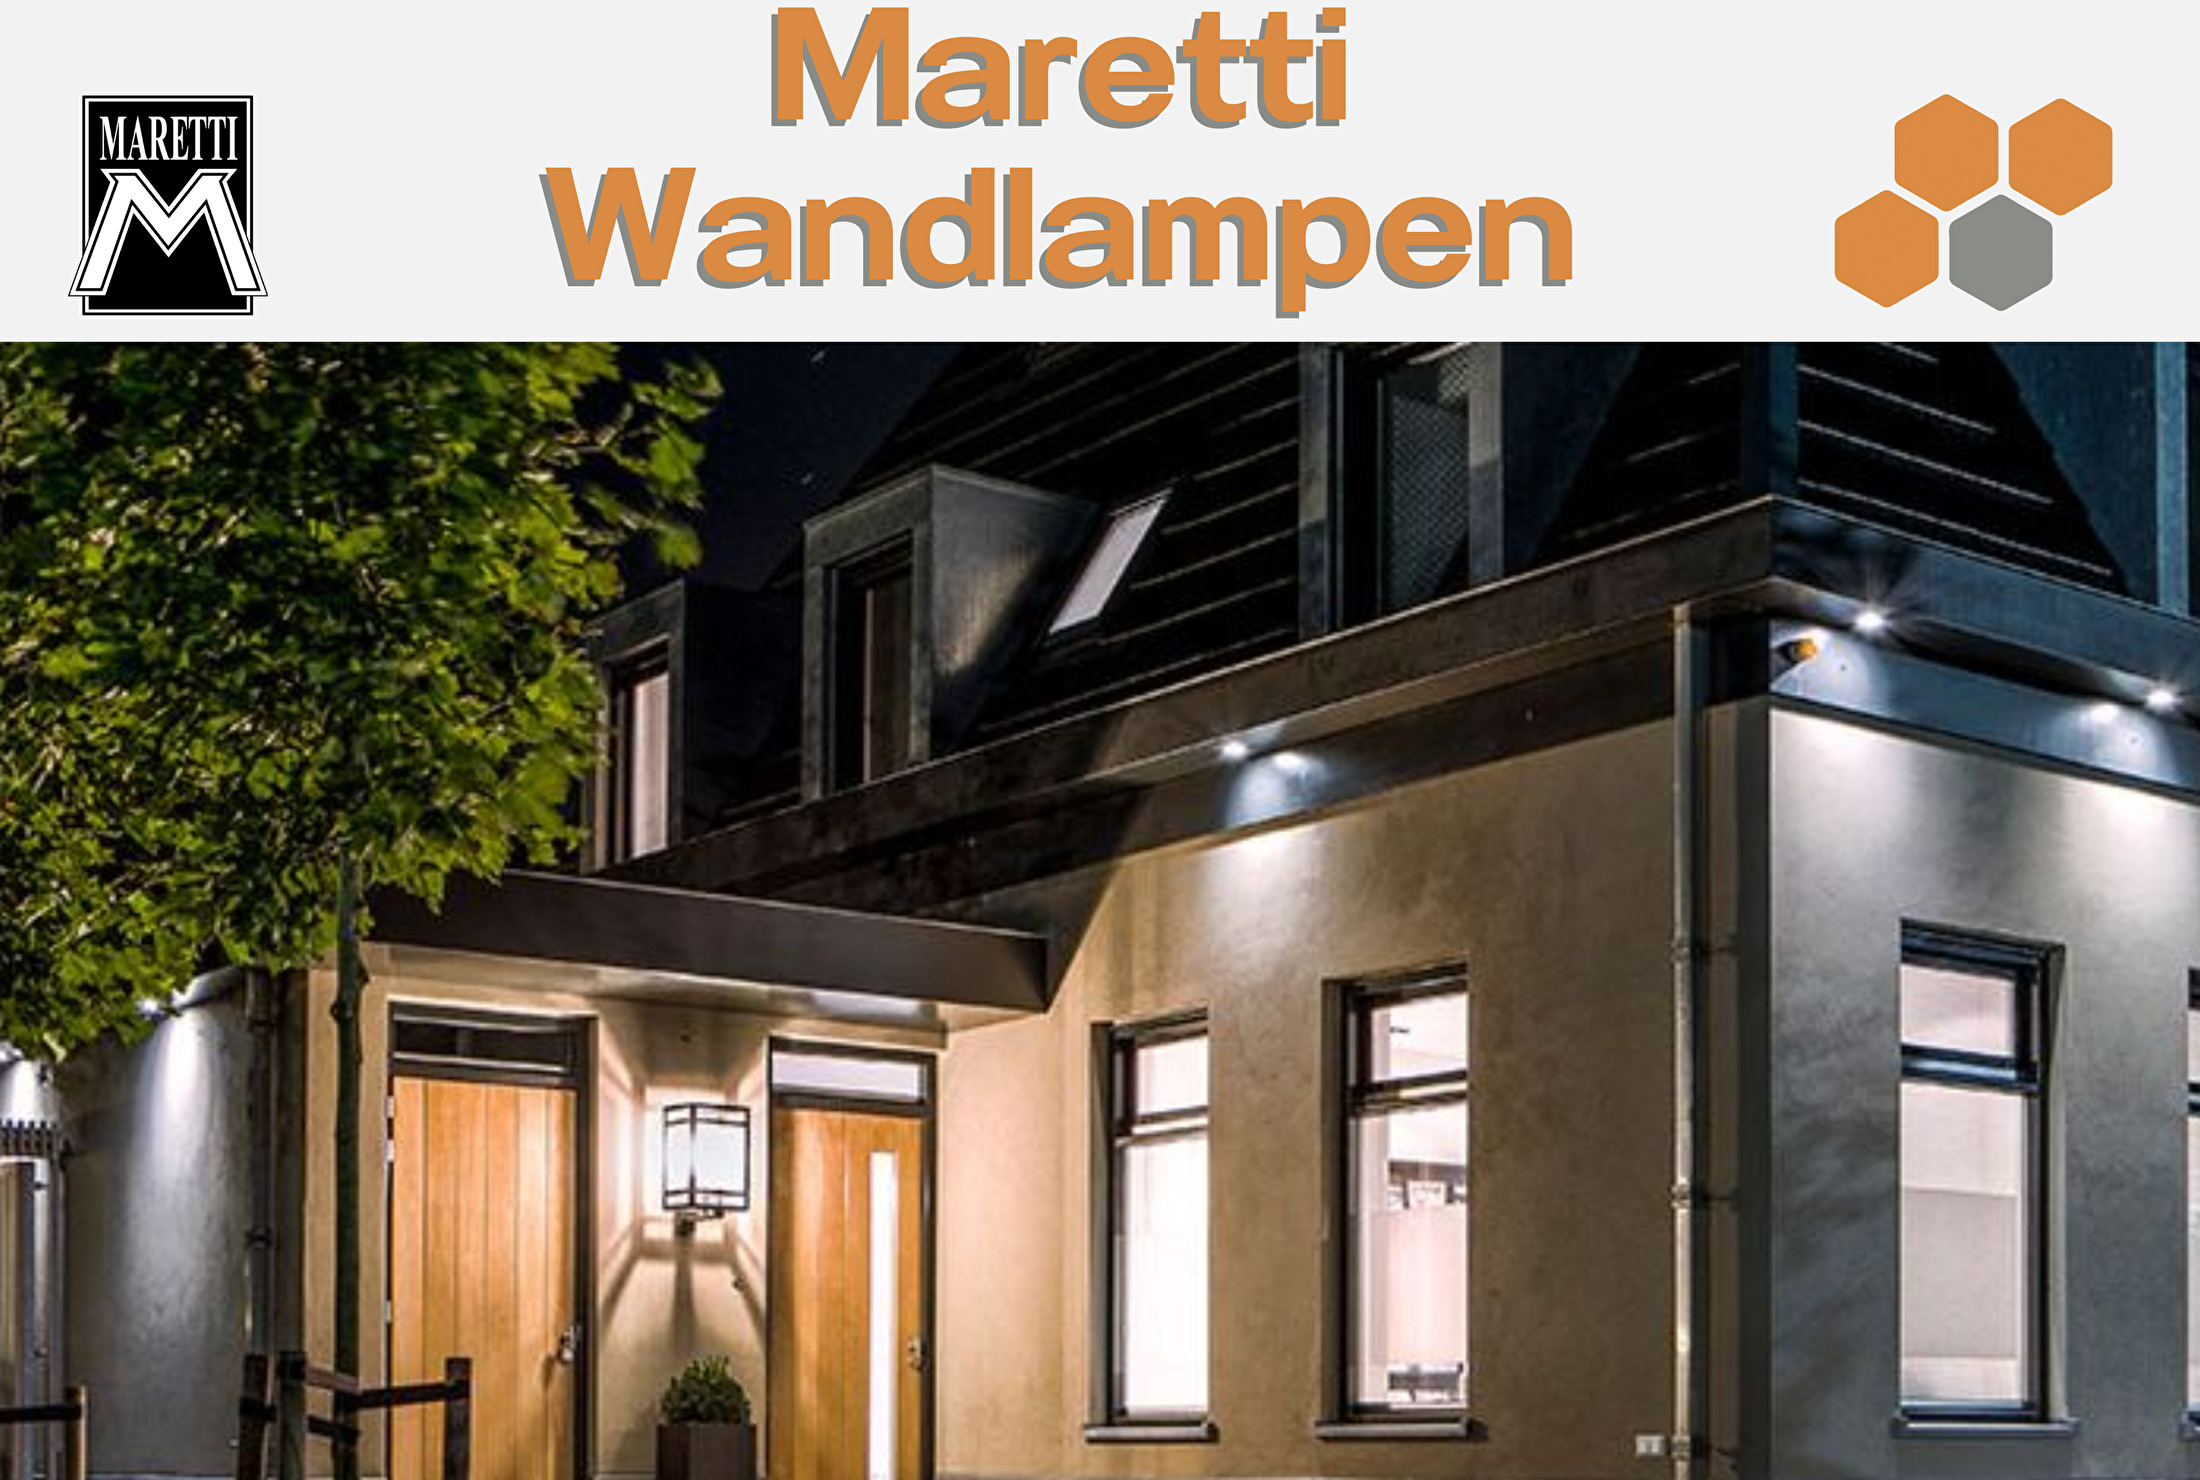 Fotoelektrisch Ervaren persoon Verbeteren Maretti Wandlampen | Bestratingsmarkt.com